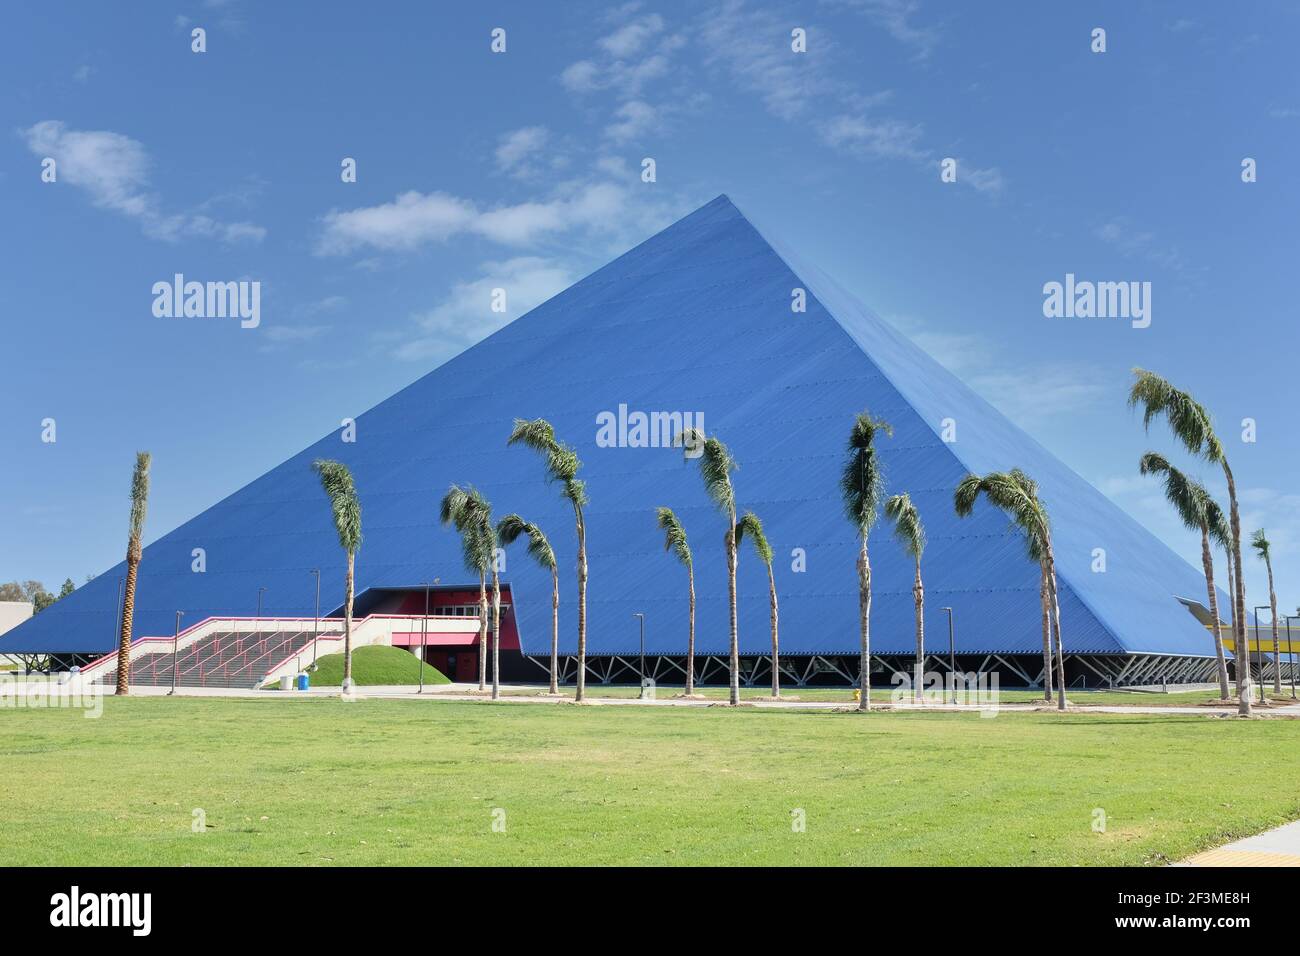 LONG BEACH, CALIFORNIE - 16 MARS 2021 : la Pyramide Walter, anciennement appelée Pyramide de long Beach, est un aréna intérieur polyvalent de 4,000 places Banque D'Images